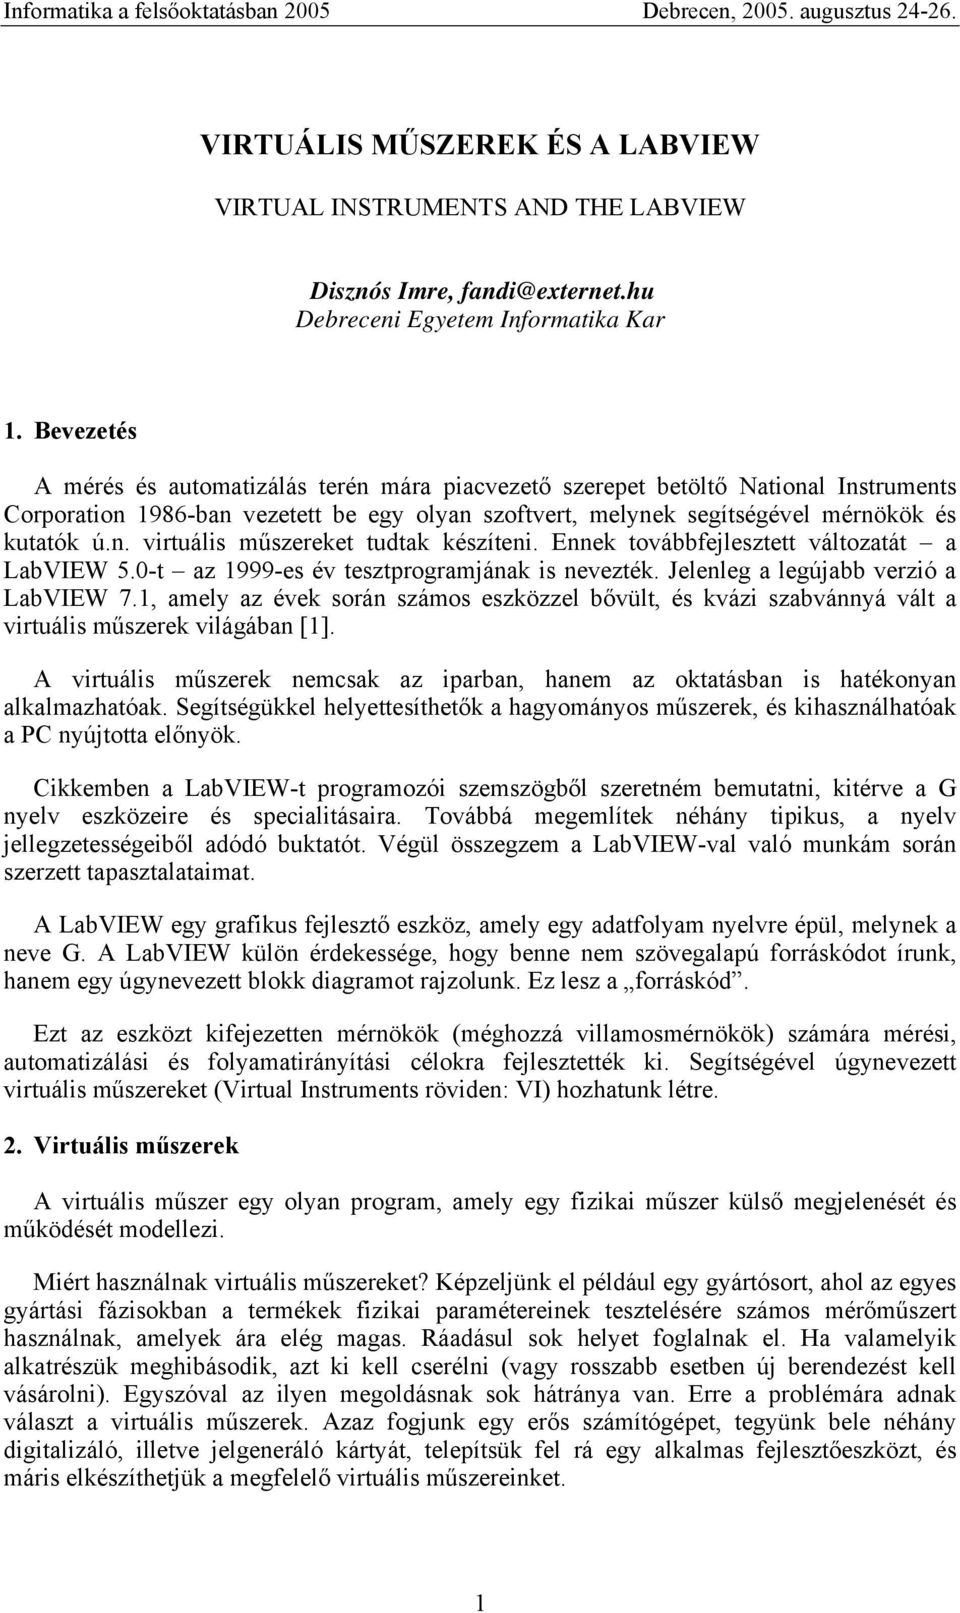 Ennek továbbfejlesztett változatát a LabVIEW 5.0-t az 1999-es év tesztprogramjának is nevezték. Jelenleg a legújabb verzió a LabVIEW 7.